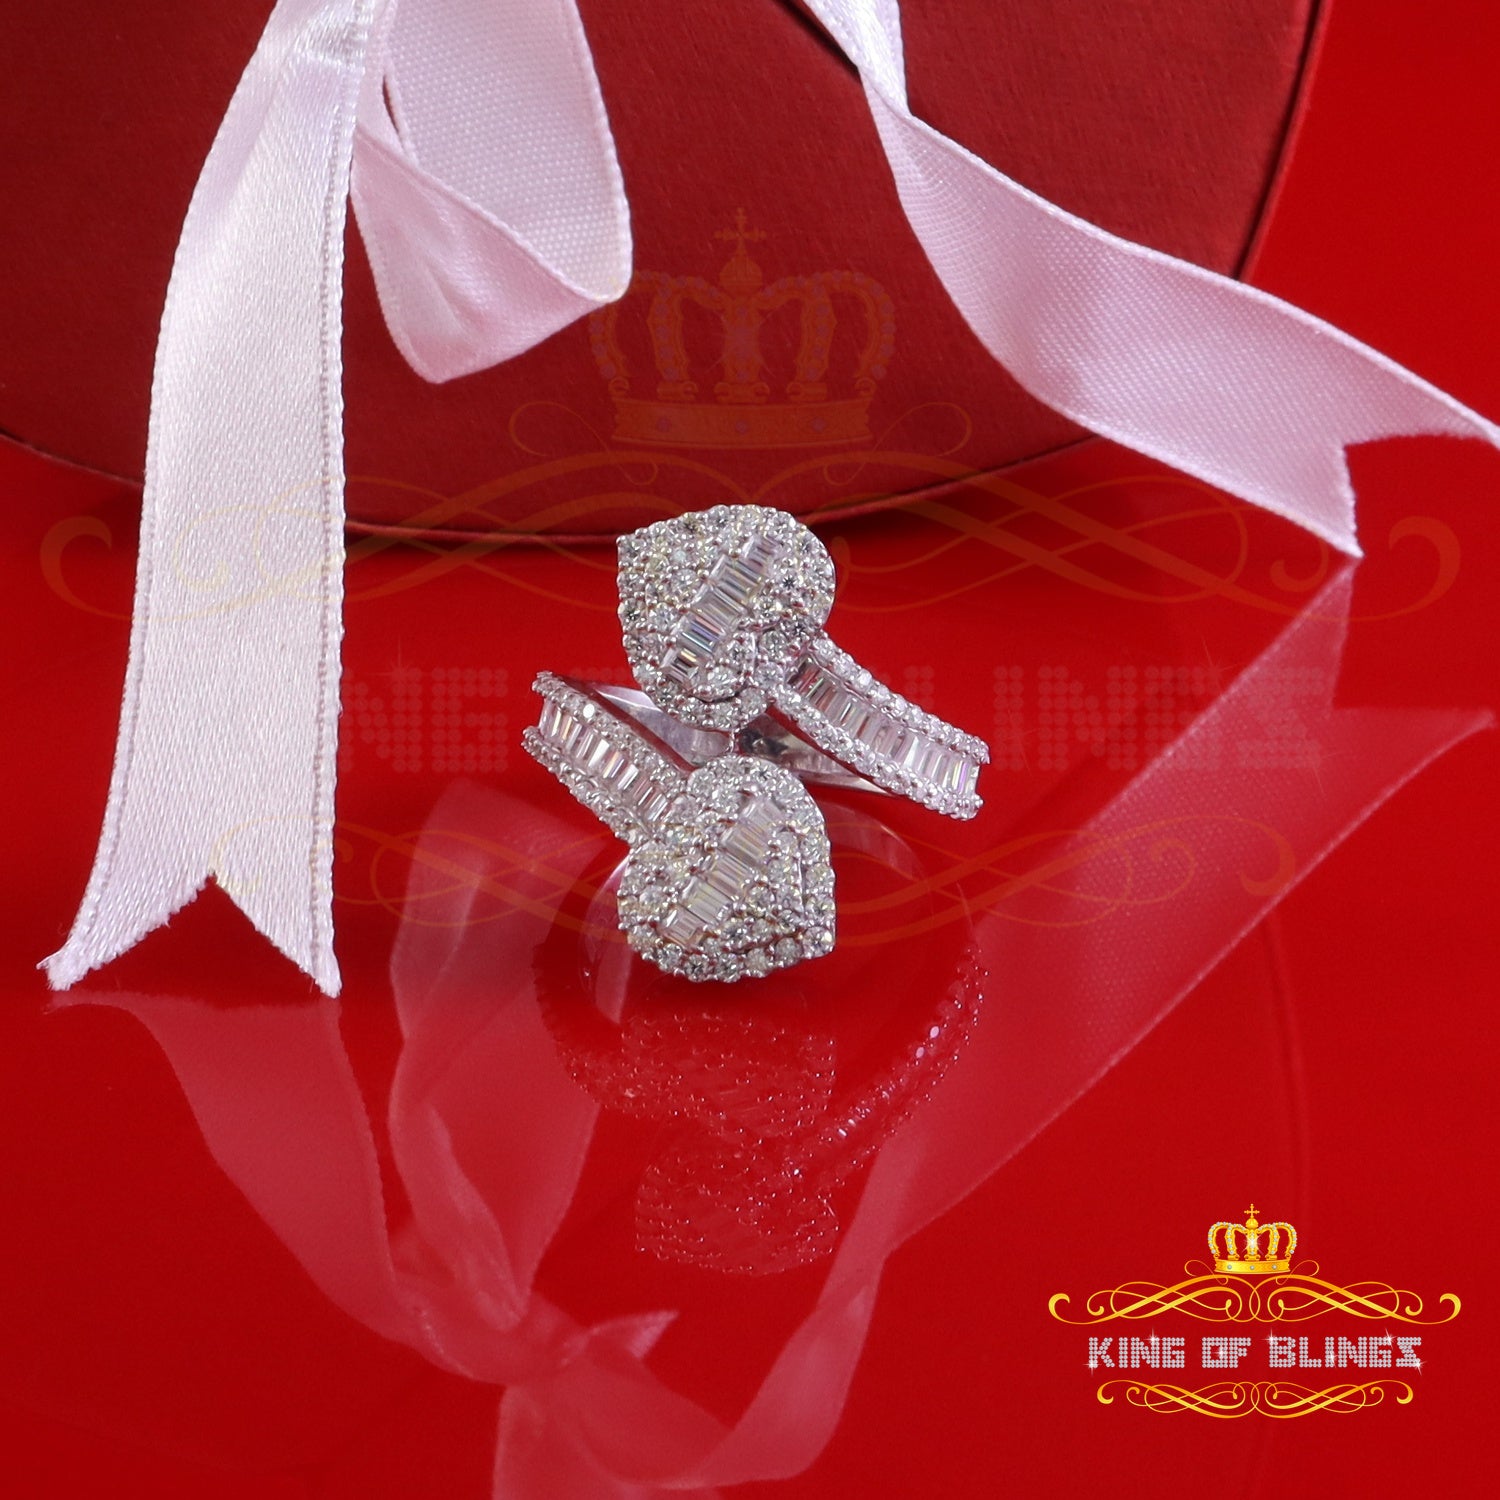 King of Bling's Womens 925 Silver White 2.00ct VVS 'D' Moissanite Tinny Heart Rings Size 8 King of Blings